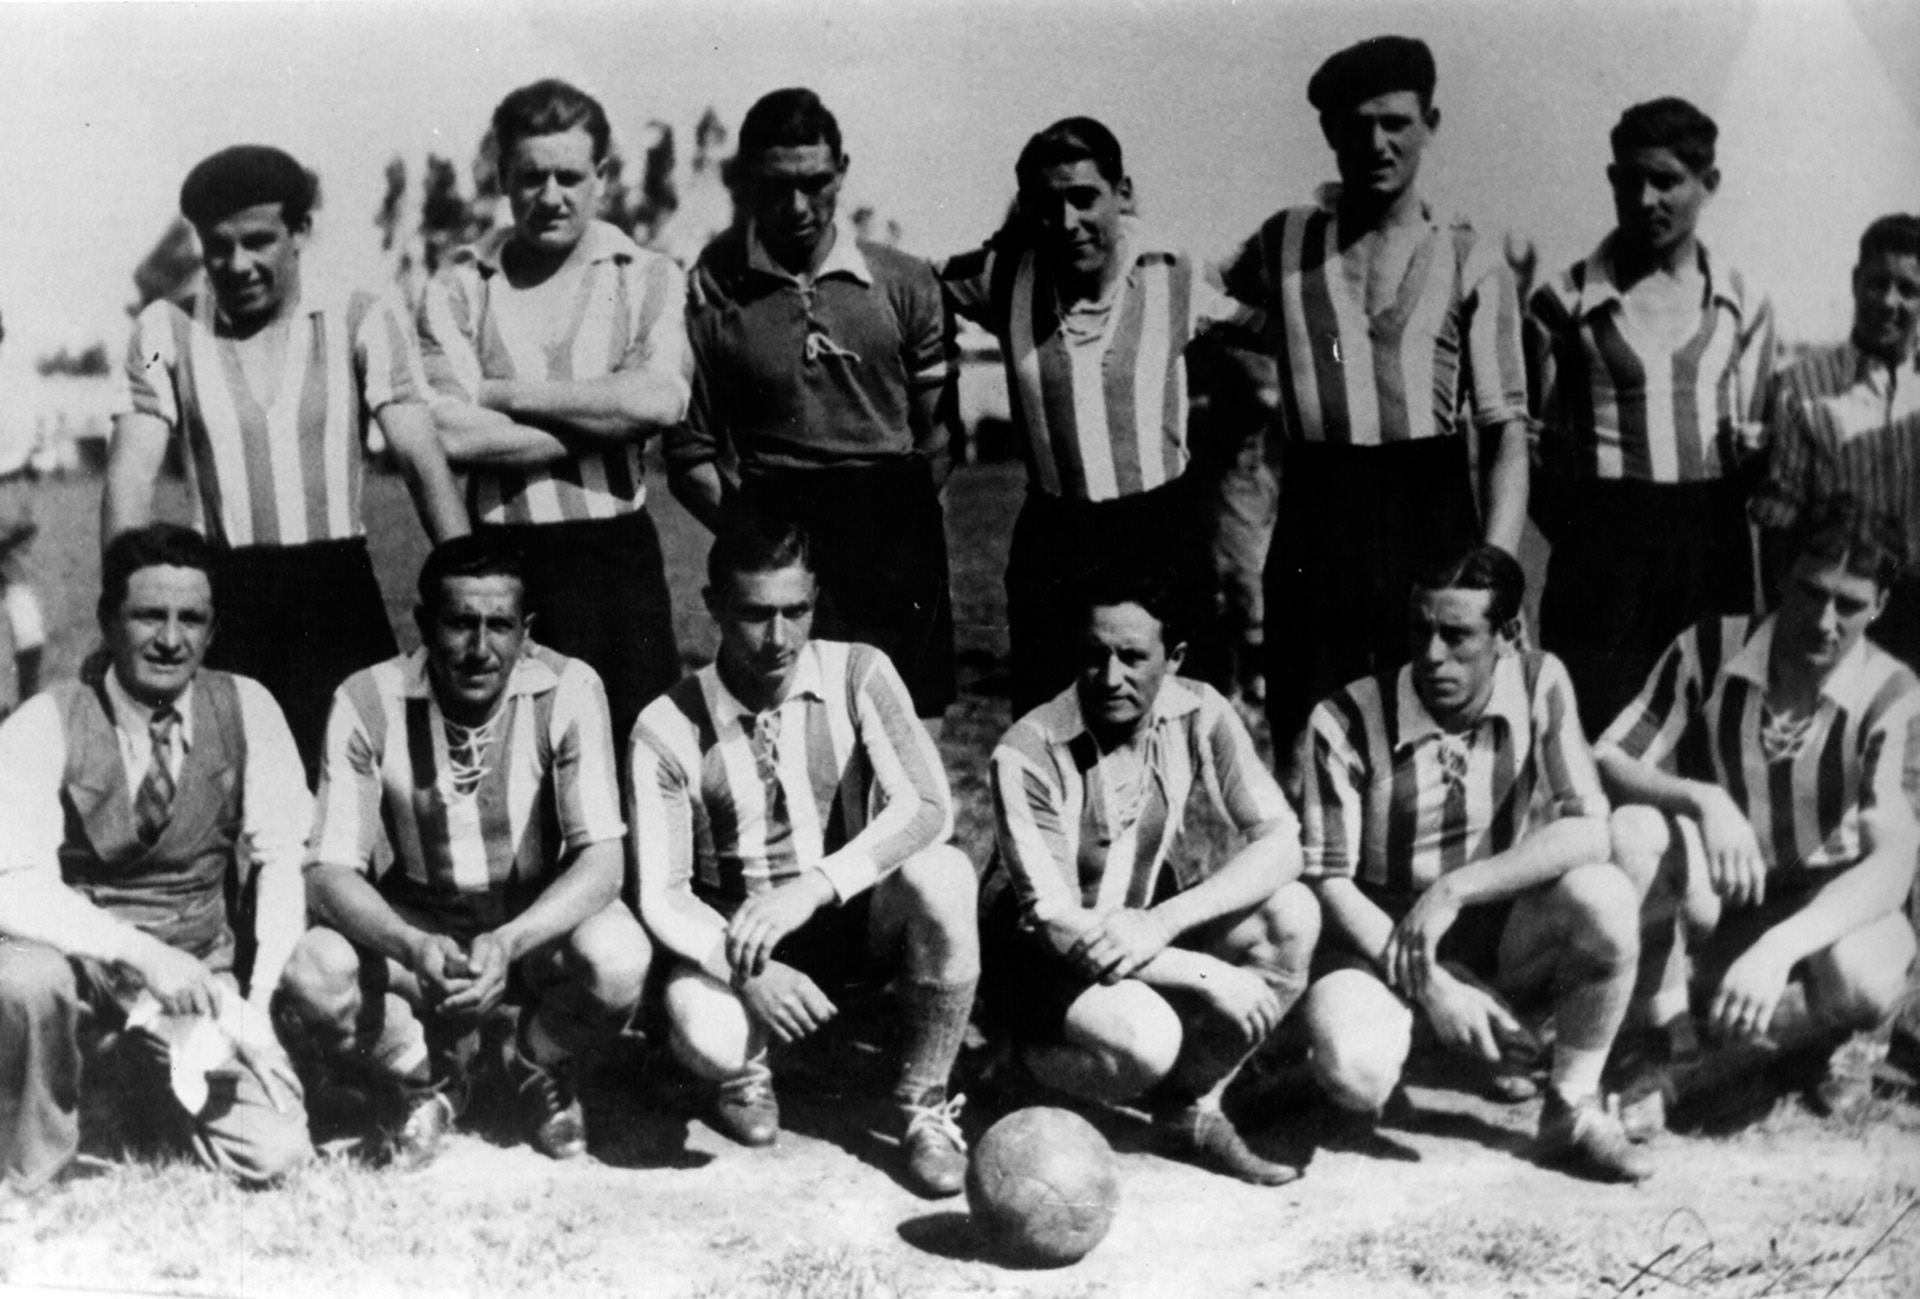 Con el equipo de Rivadavia ganó cuatro campeonatos entre 1935 y 1938. Aparece en la fila de abajo y es el tercero de la izquierda. La camiseta era blanca con franjas azules (Museo Fangio).